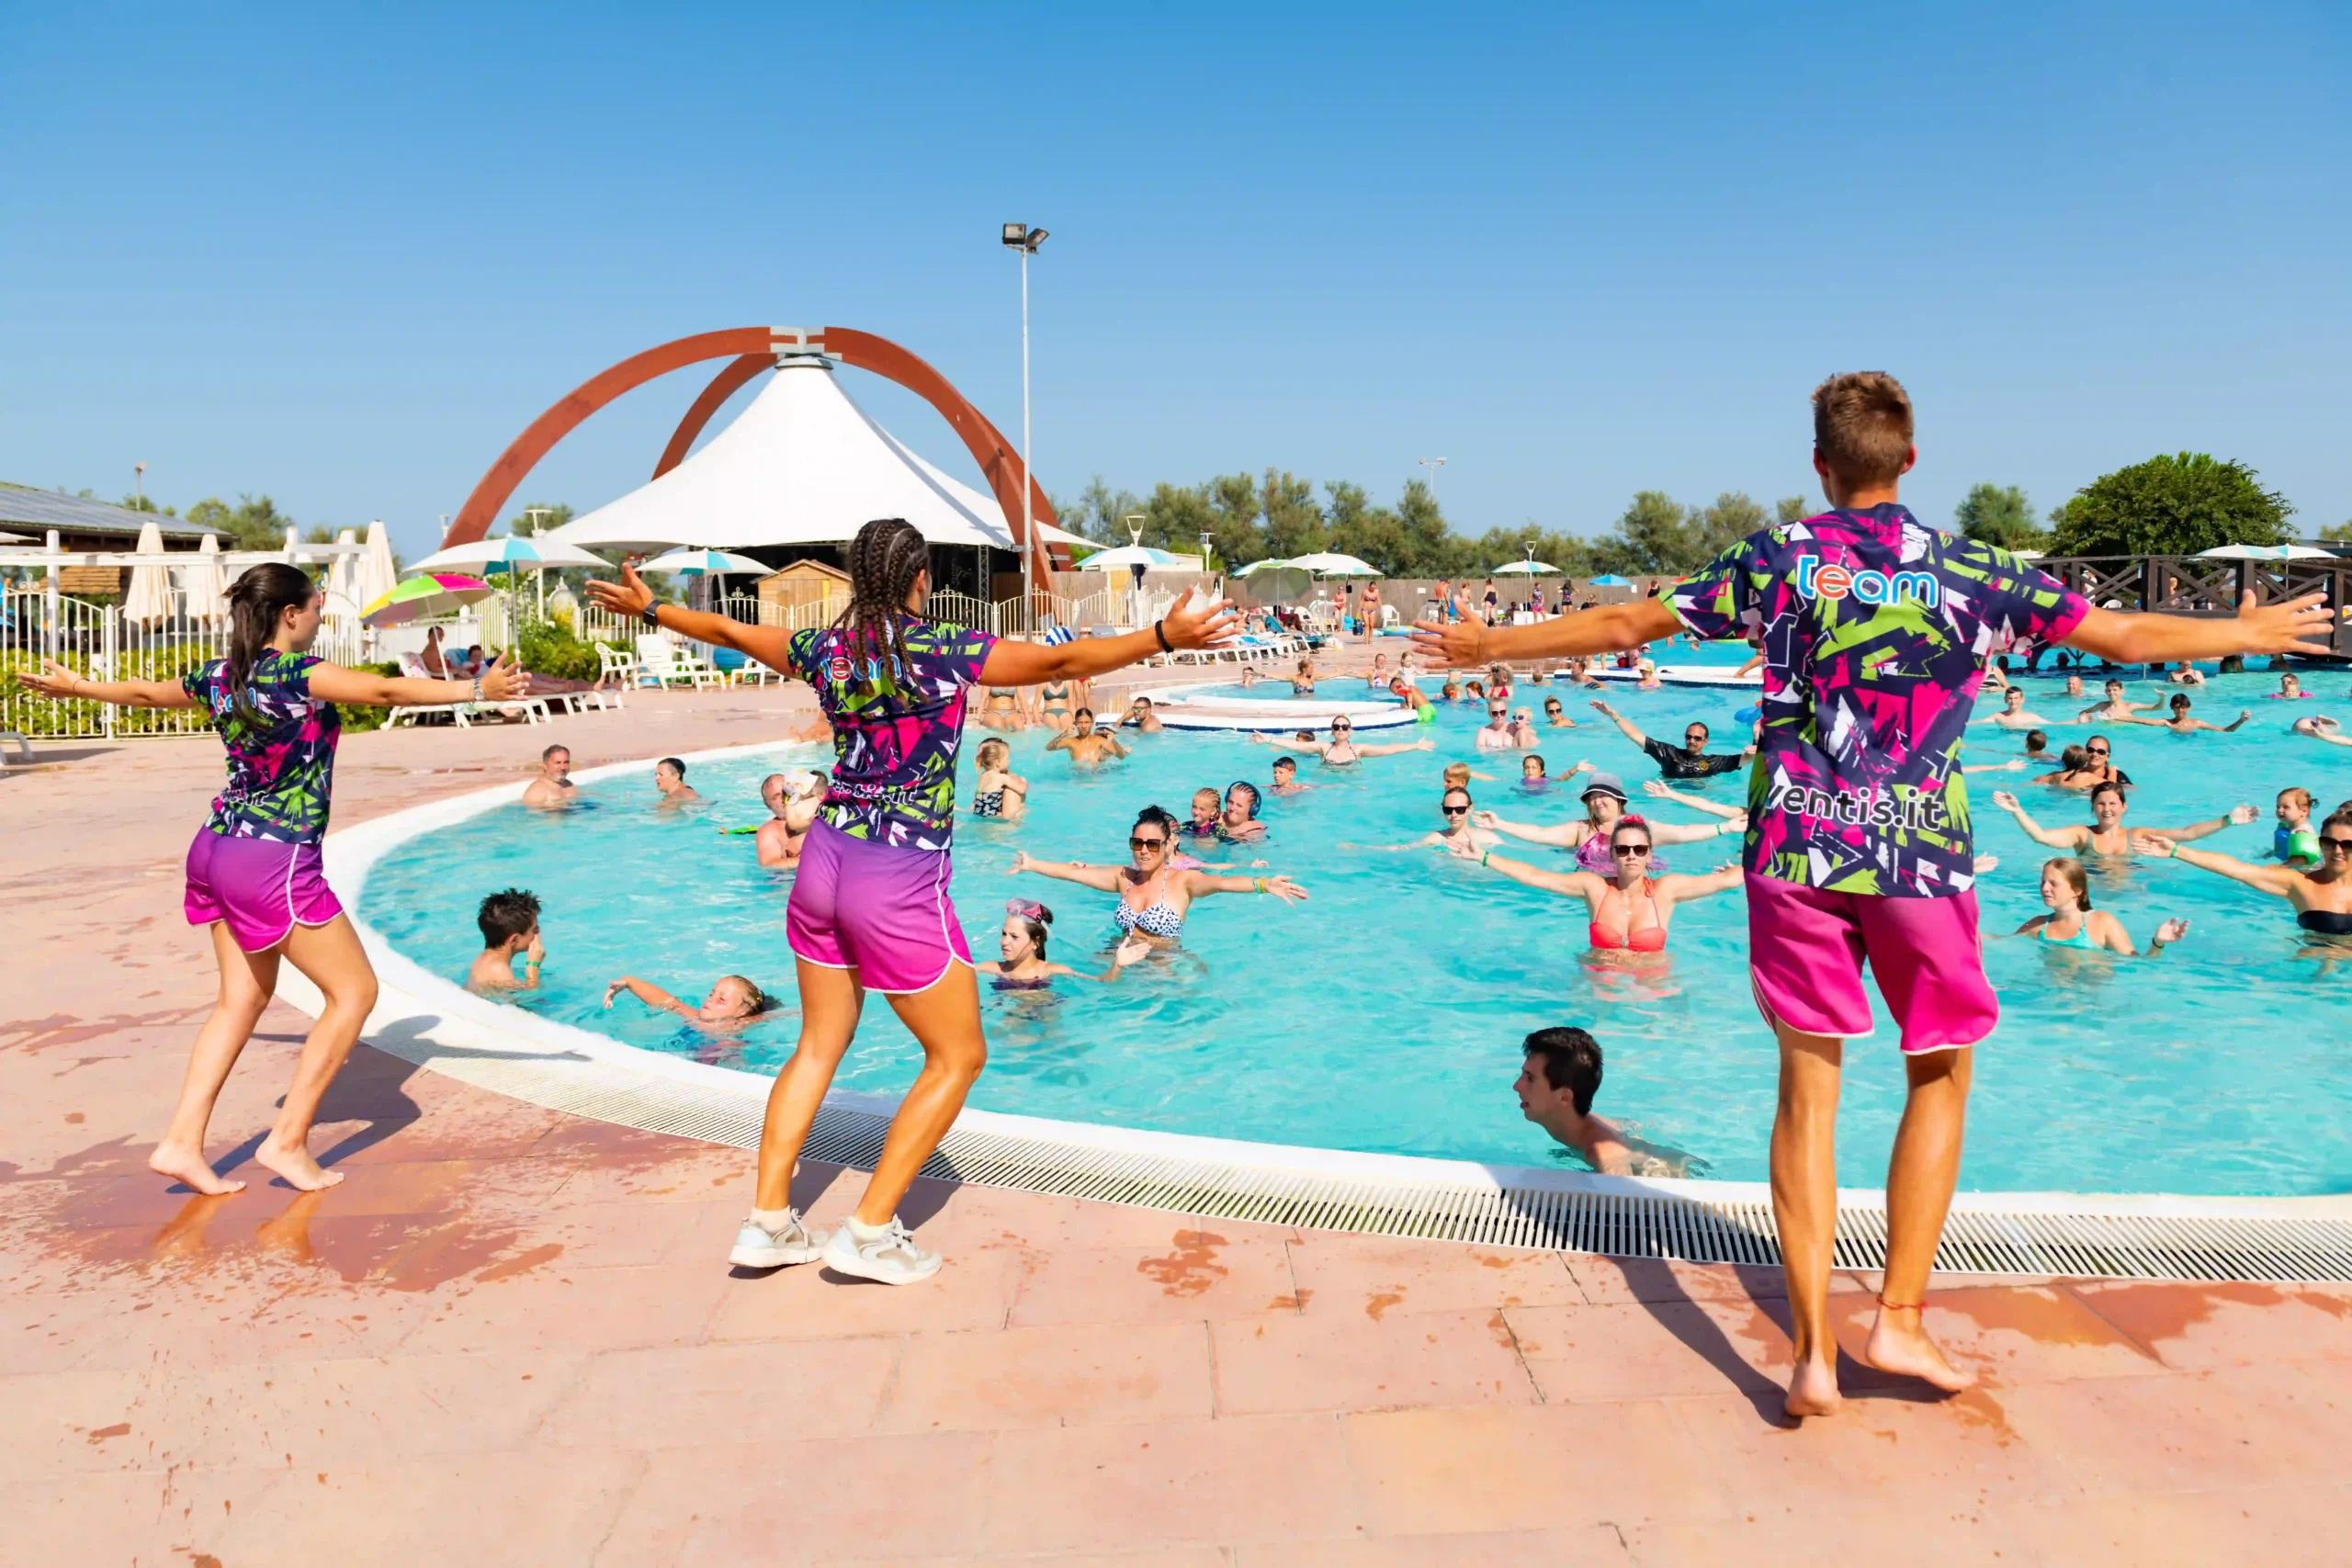 Animatori in abiti colorati che guidano una sessione di aerobica in acqua per una folla entusiasta in una piscina di un resort.